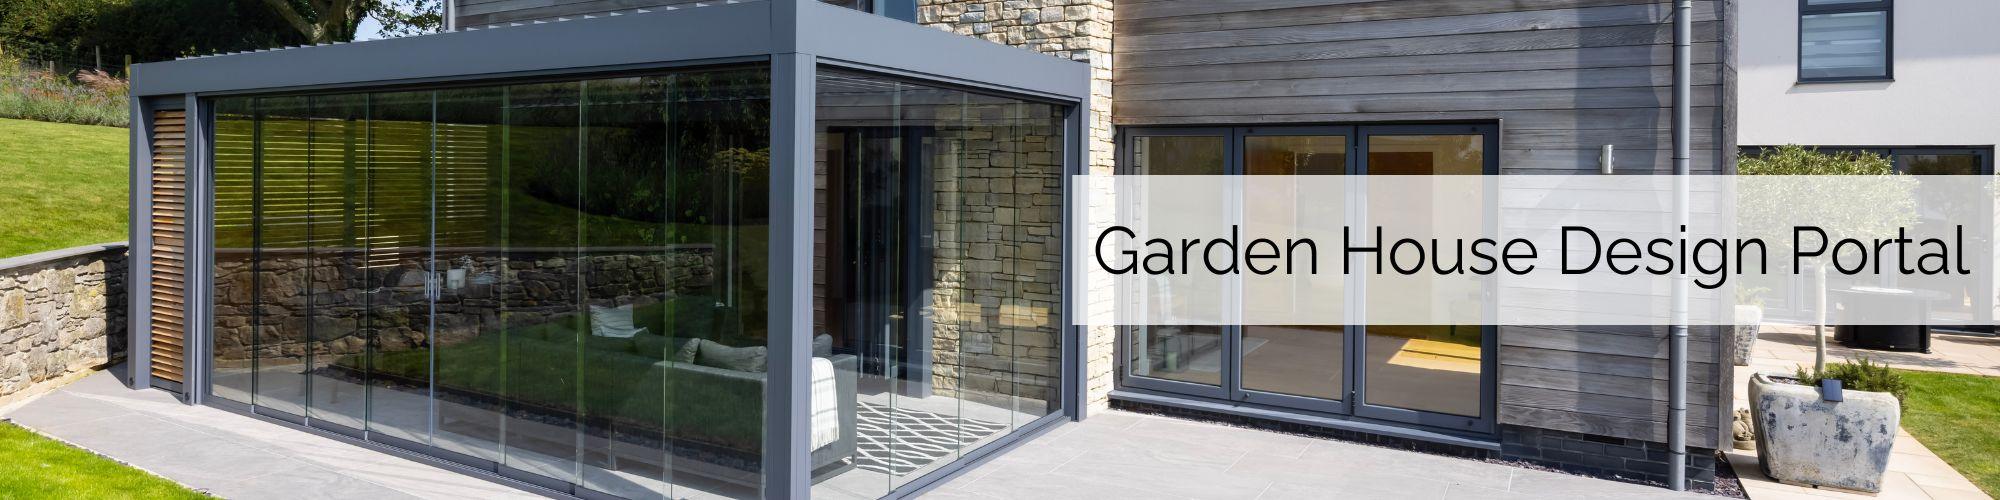 Garden_House_Design_Portal_Banner - Garden House Design